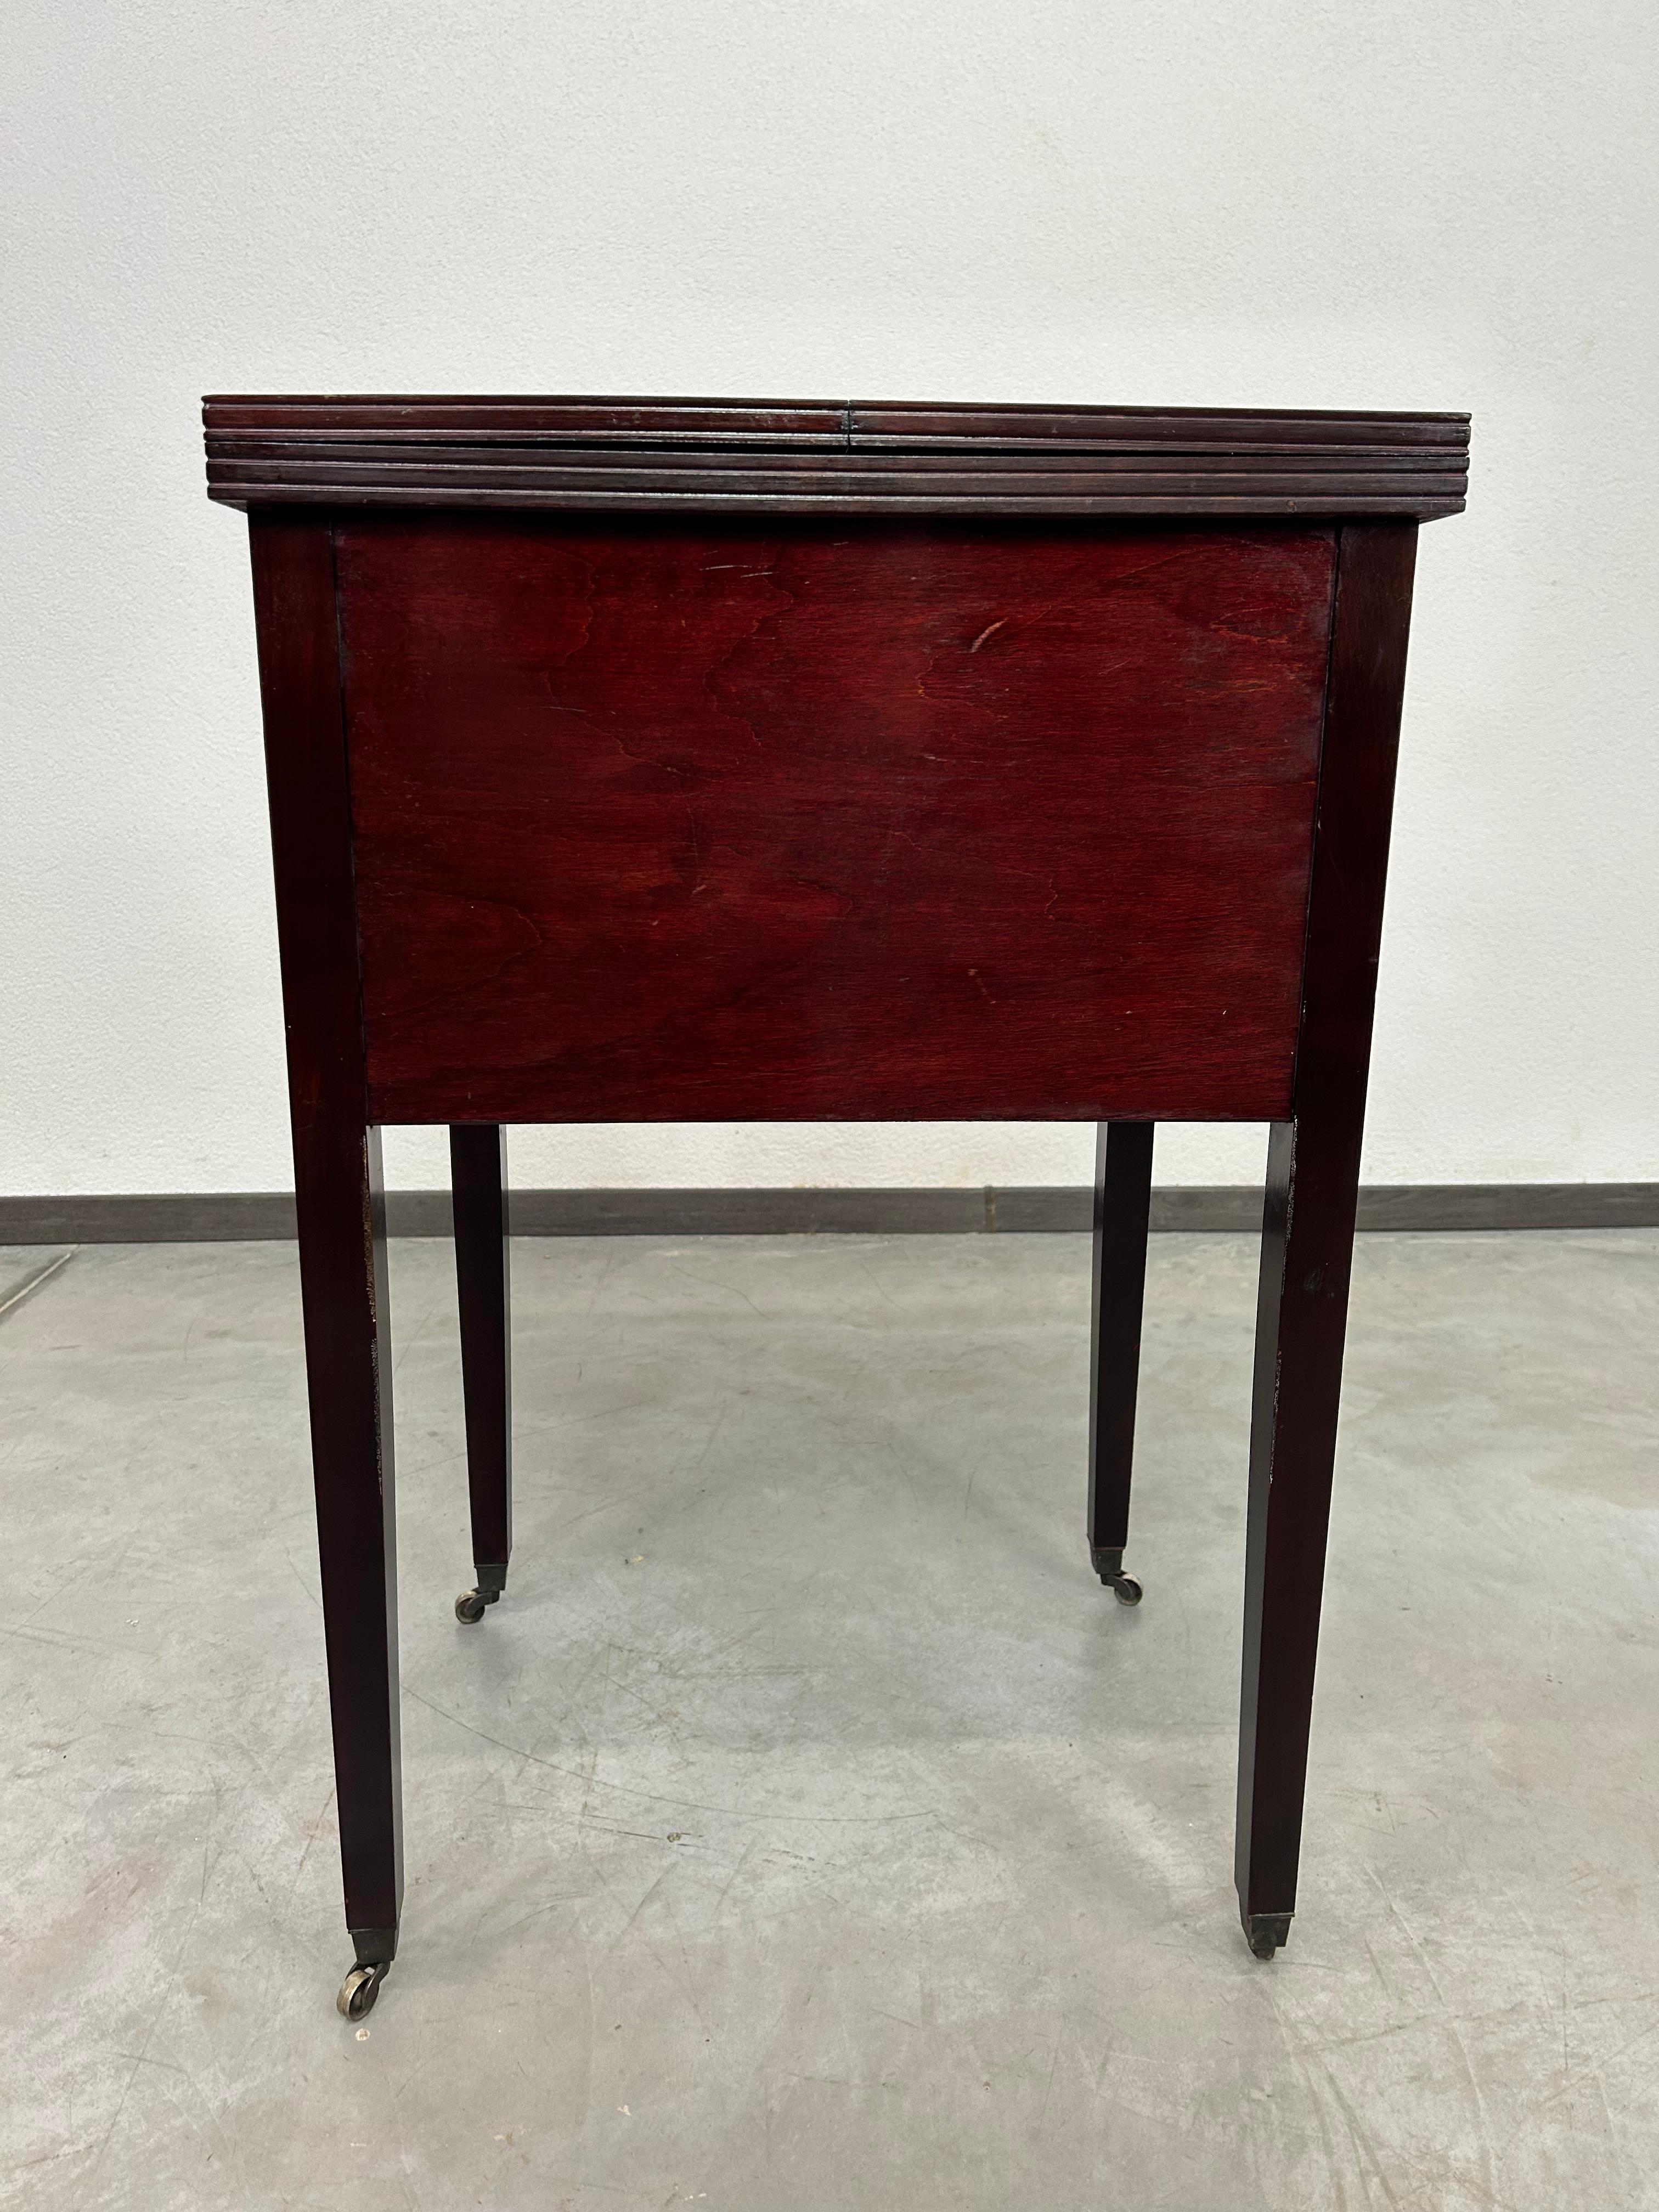 Jugendstil mahogany bar cabinet by Portois & Fix For Sale 6